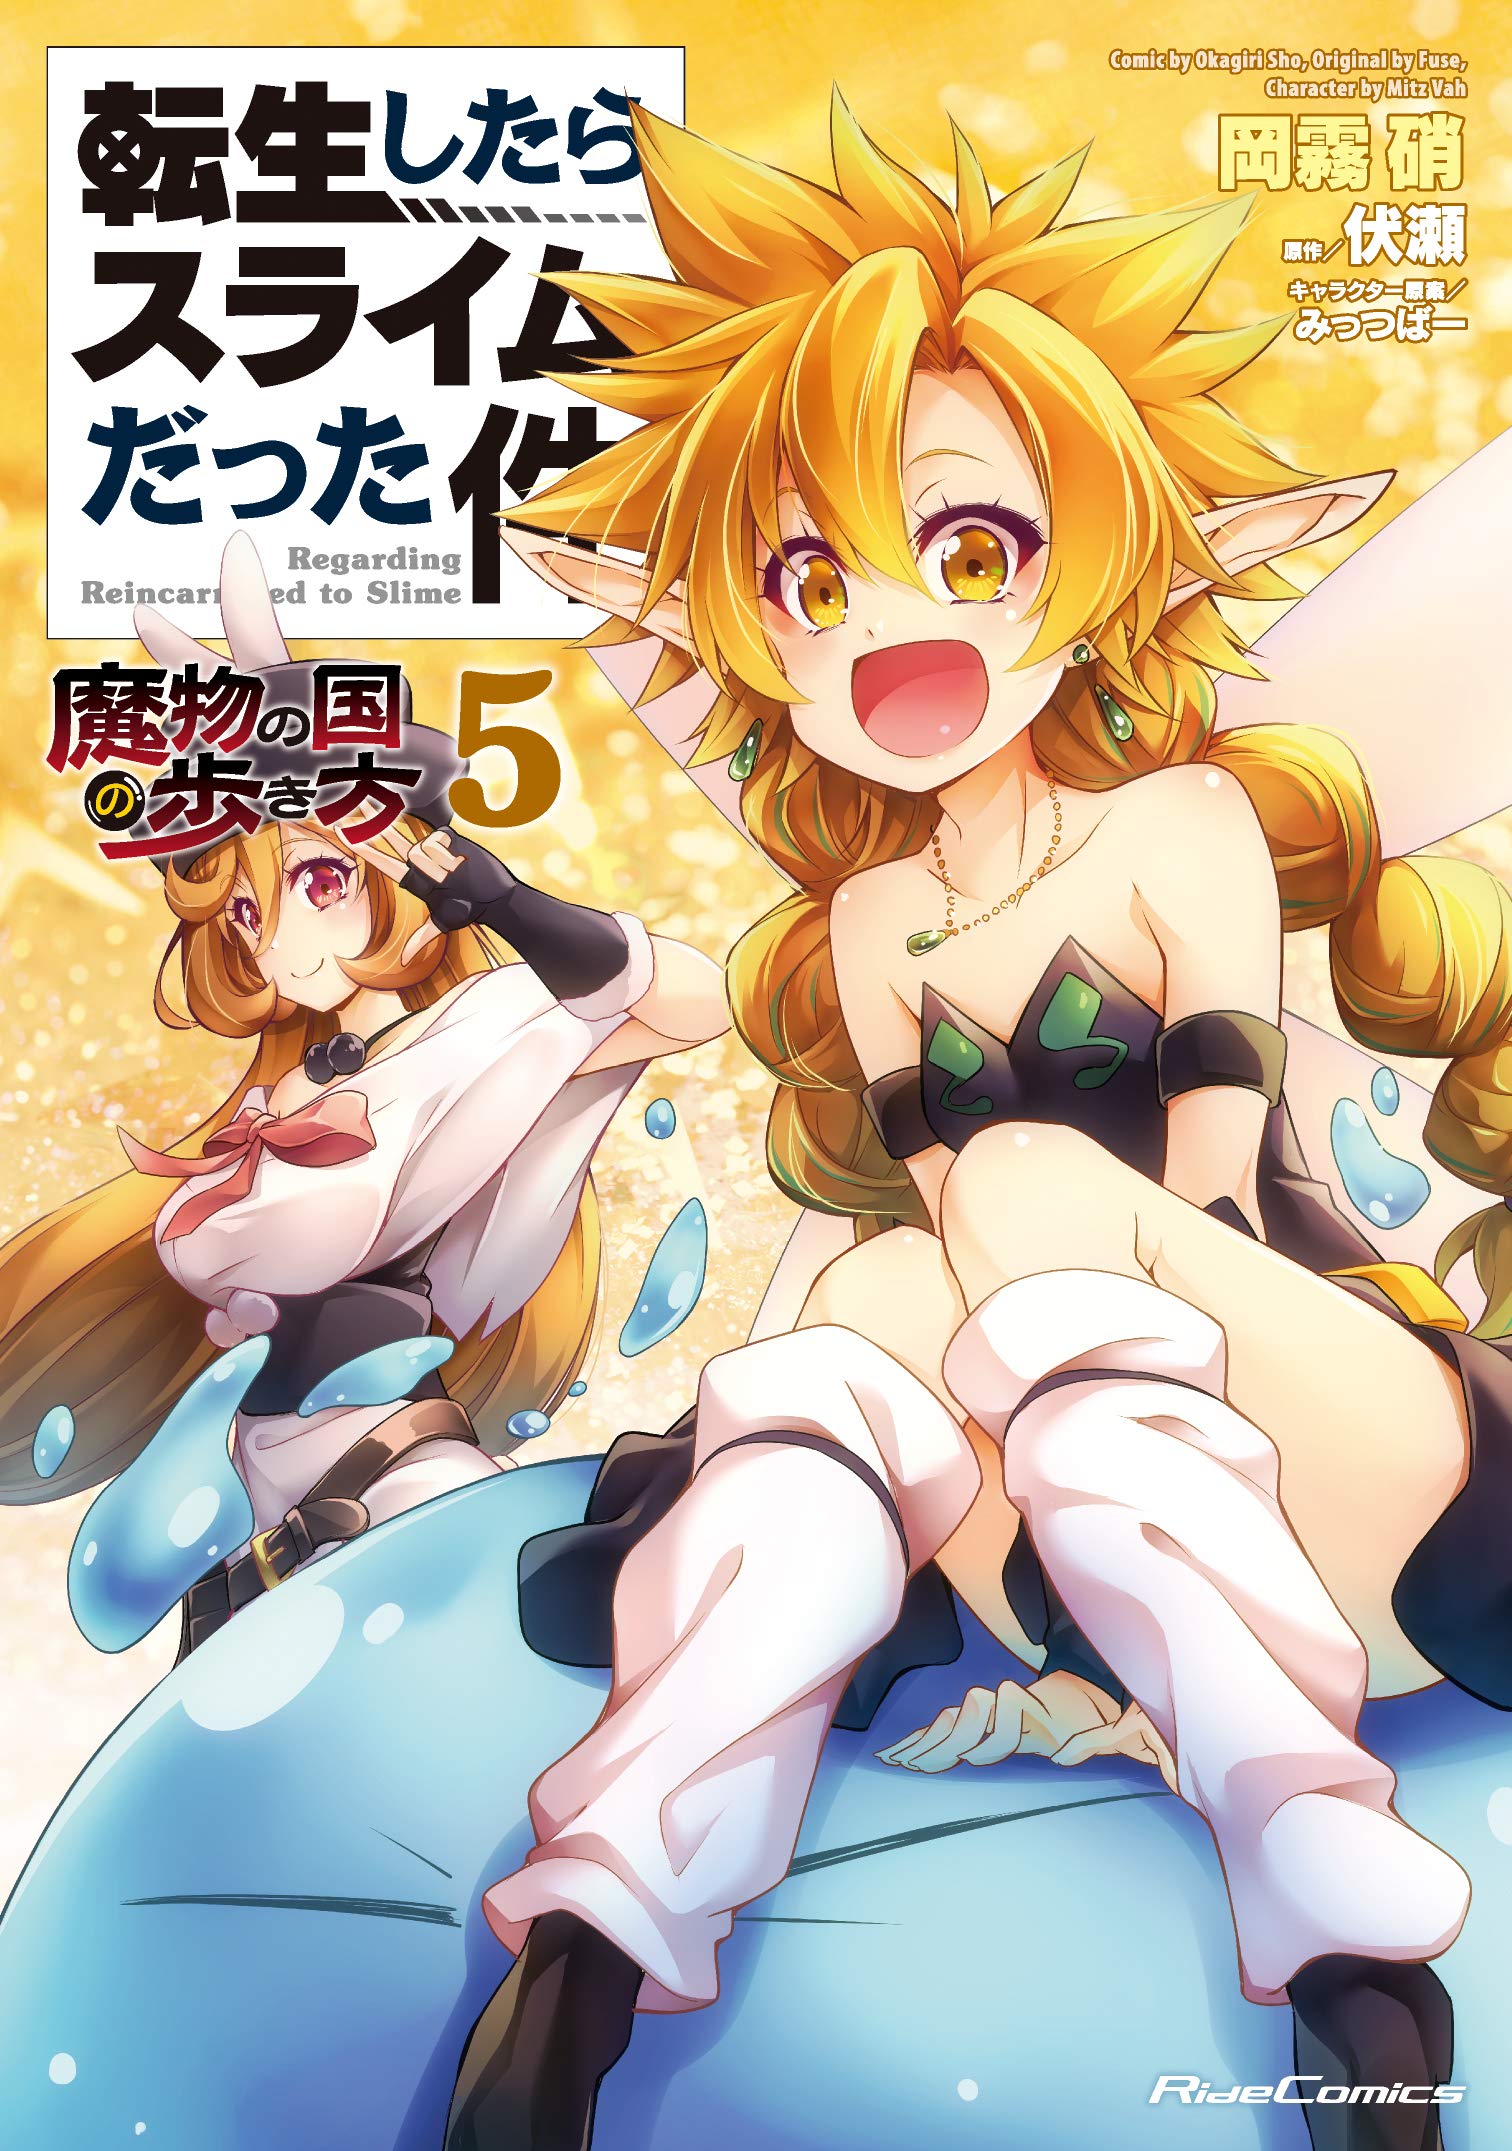 tensei shitara slime datta ken light novel volume 5